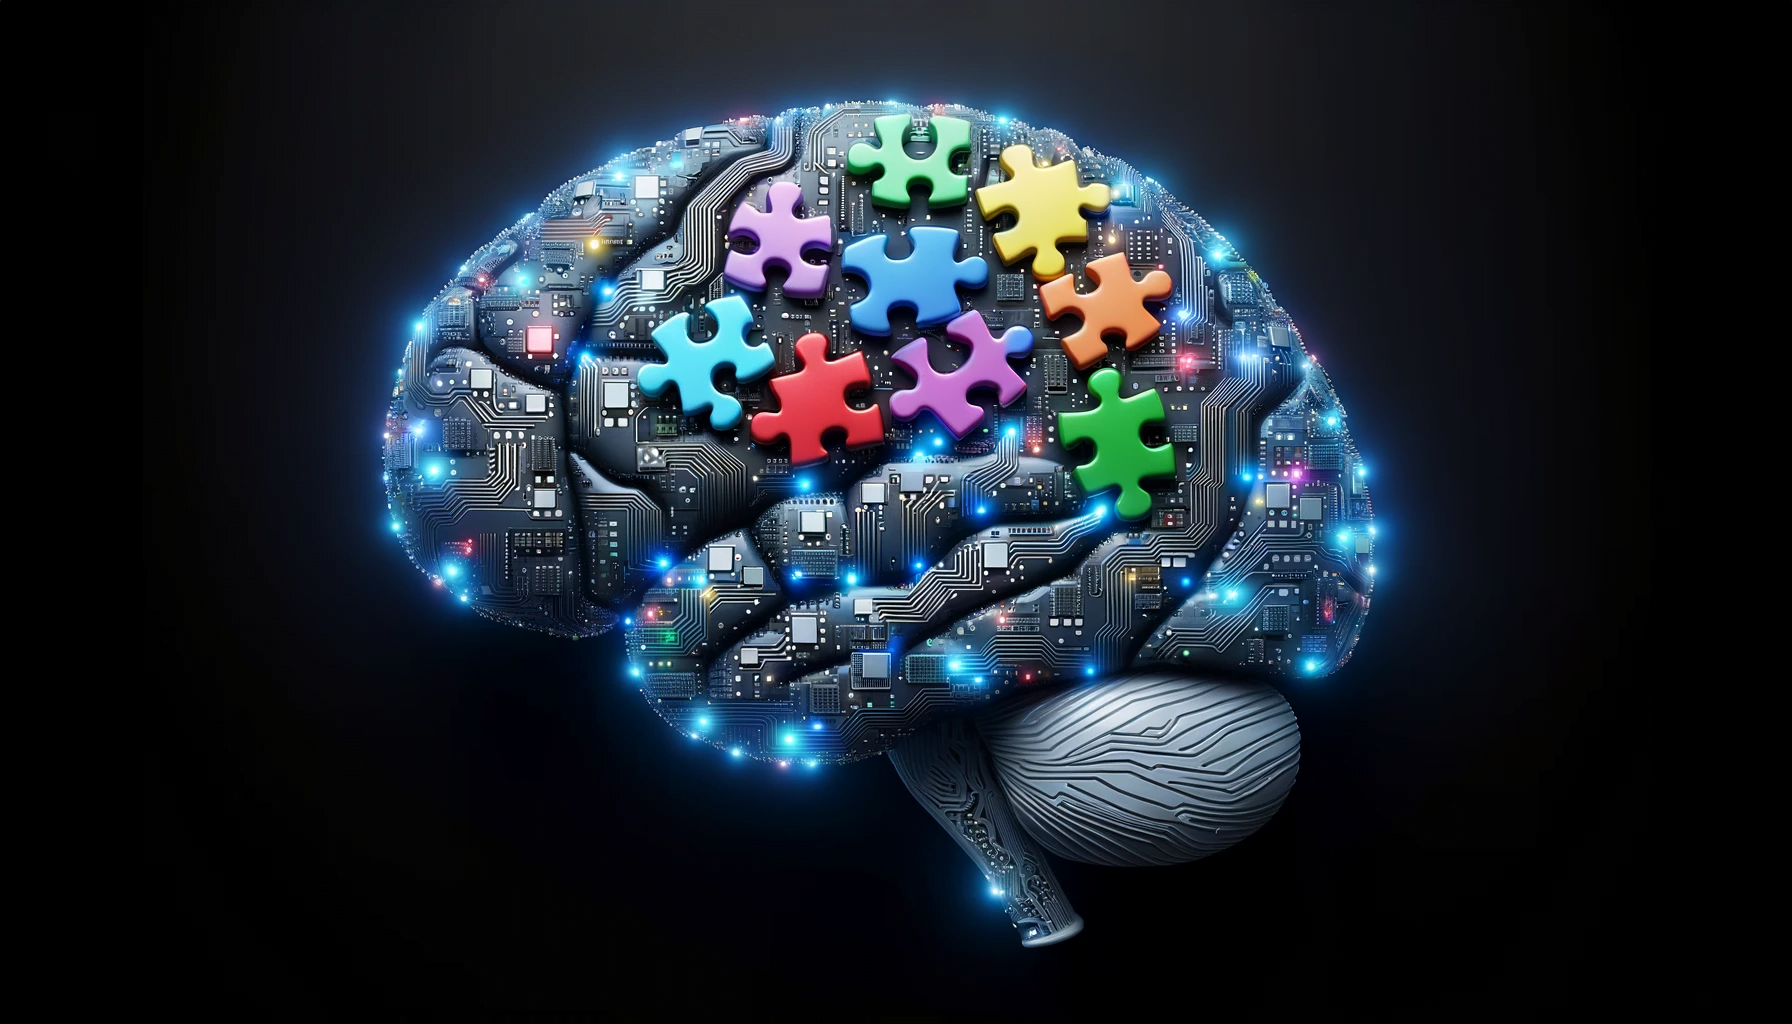 Graficzne przedstawienie mózgu w stylu cyfrowym z elementami układu scalonego oraz kolorowymi elementami puzzli na czarnym tle. Nawiązuje to do urządzenia jakim jest superkomputer działajacy jak ludzki mózg